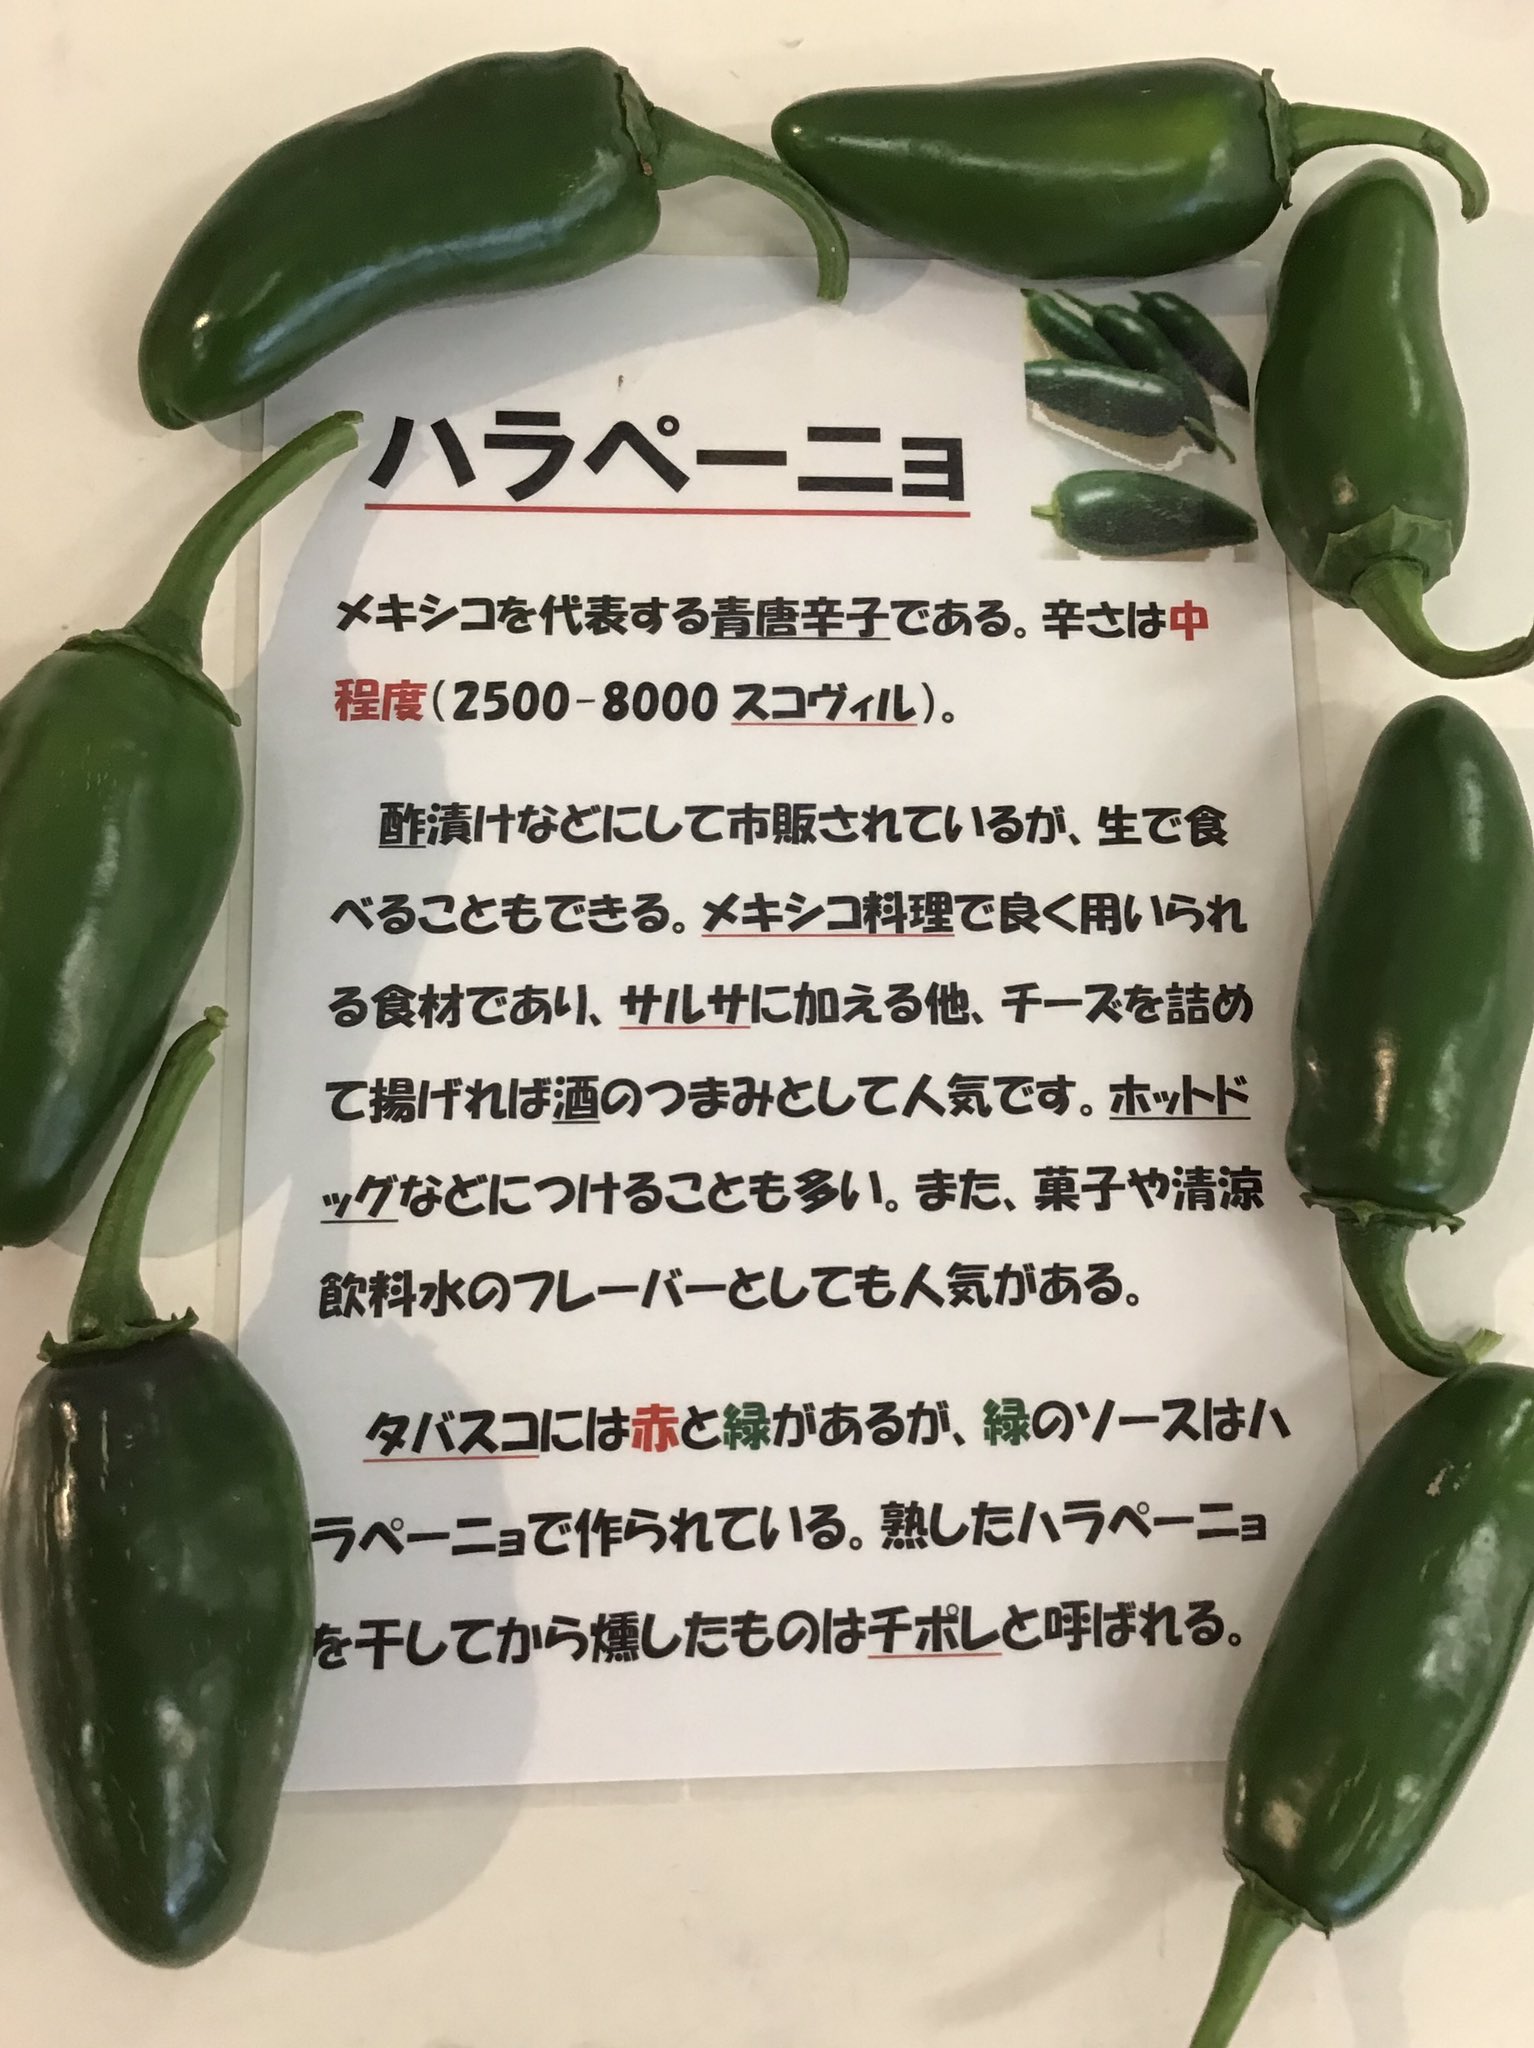 道の駅 藤川宿 ハラペーニョ 最近は日本でもお馴染みになってきた メキシコを代表する青唐辛子の ハラペーニョ タバスコの緑のソースはハラペーニョで作られています もちろん辛い野菜ですが酢漬けにして生で食べることもできます ホットな夏にホット